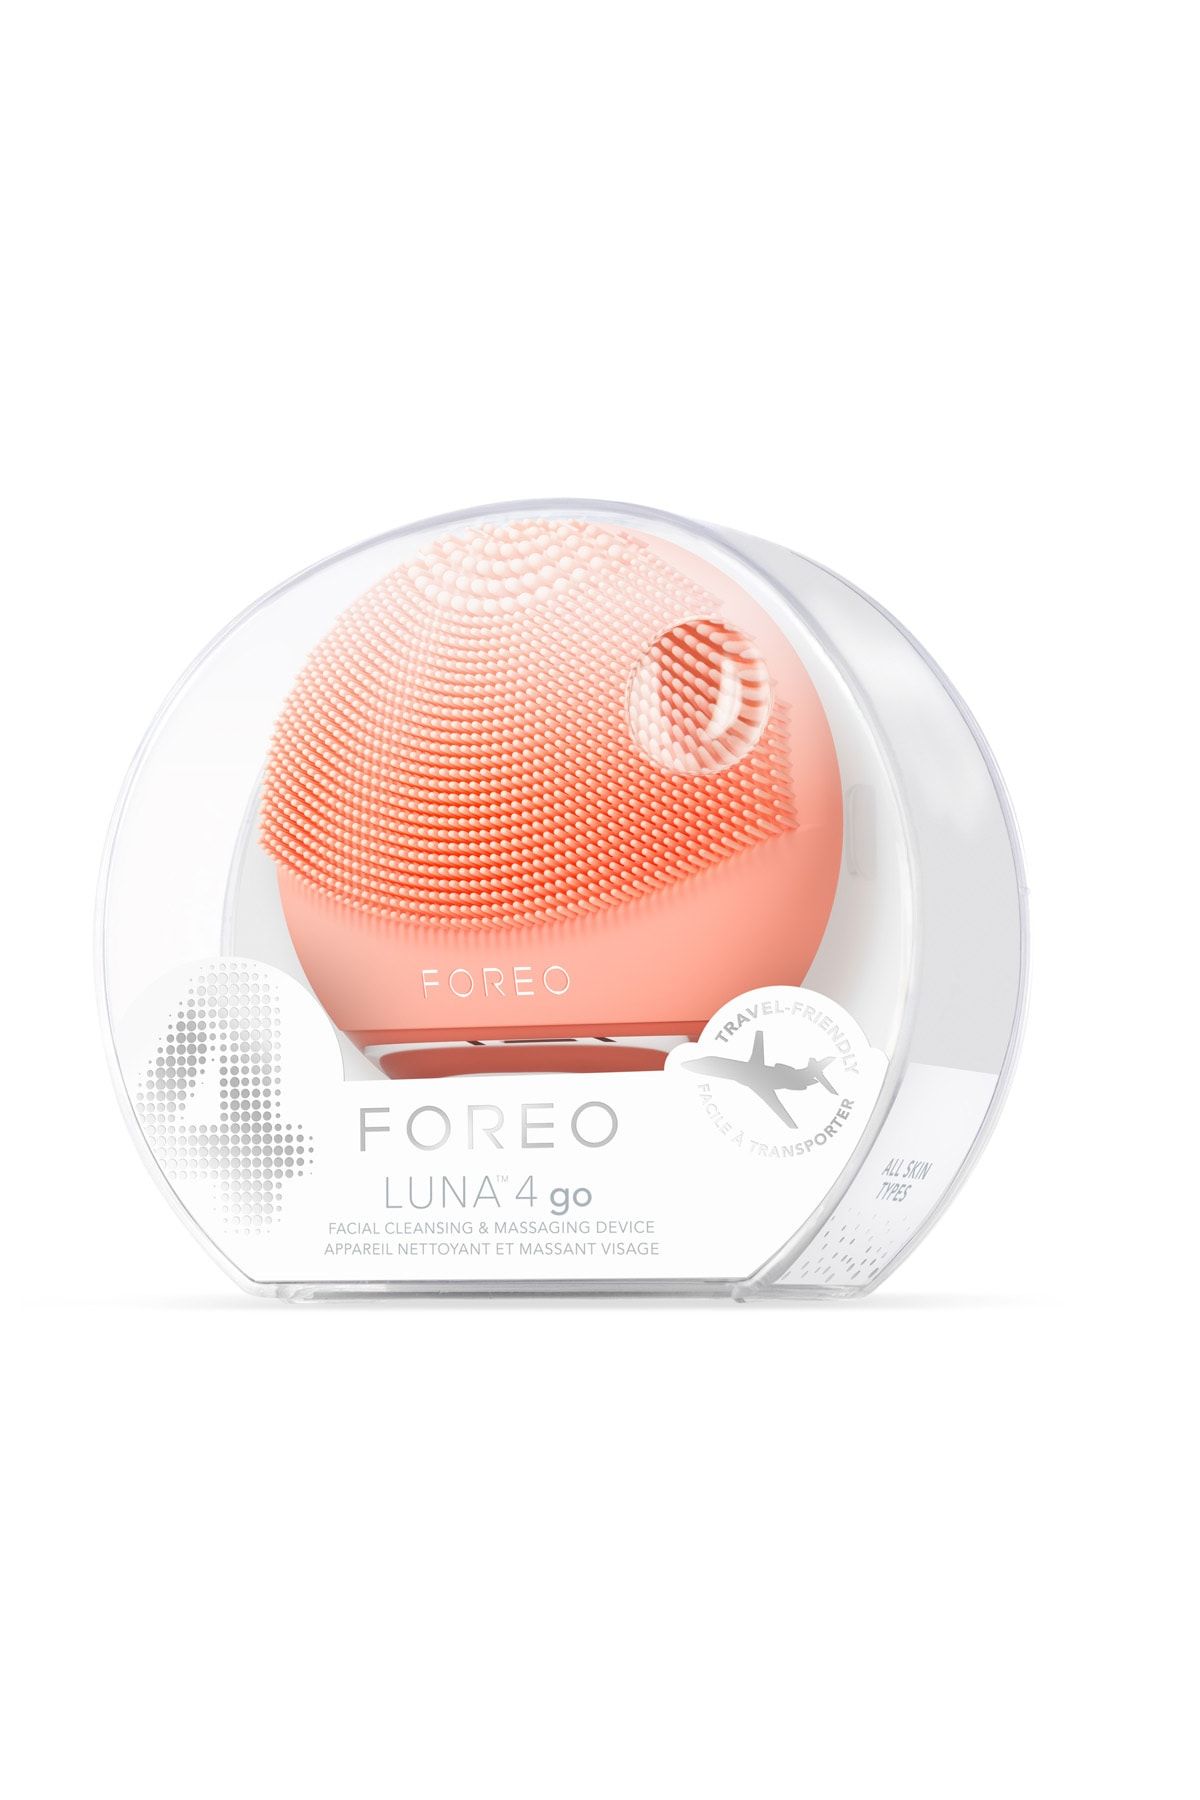 Foreo دستگاه تمیزکننده و تنگ کننده چهره Luna ™ 4 GO، رنگ هلویی عالی